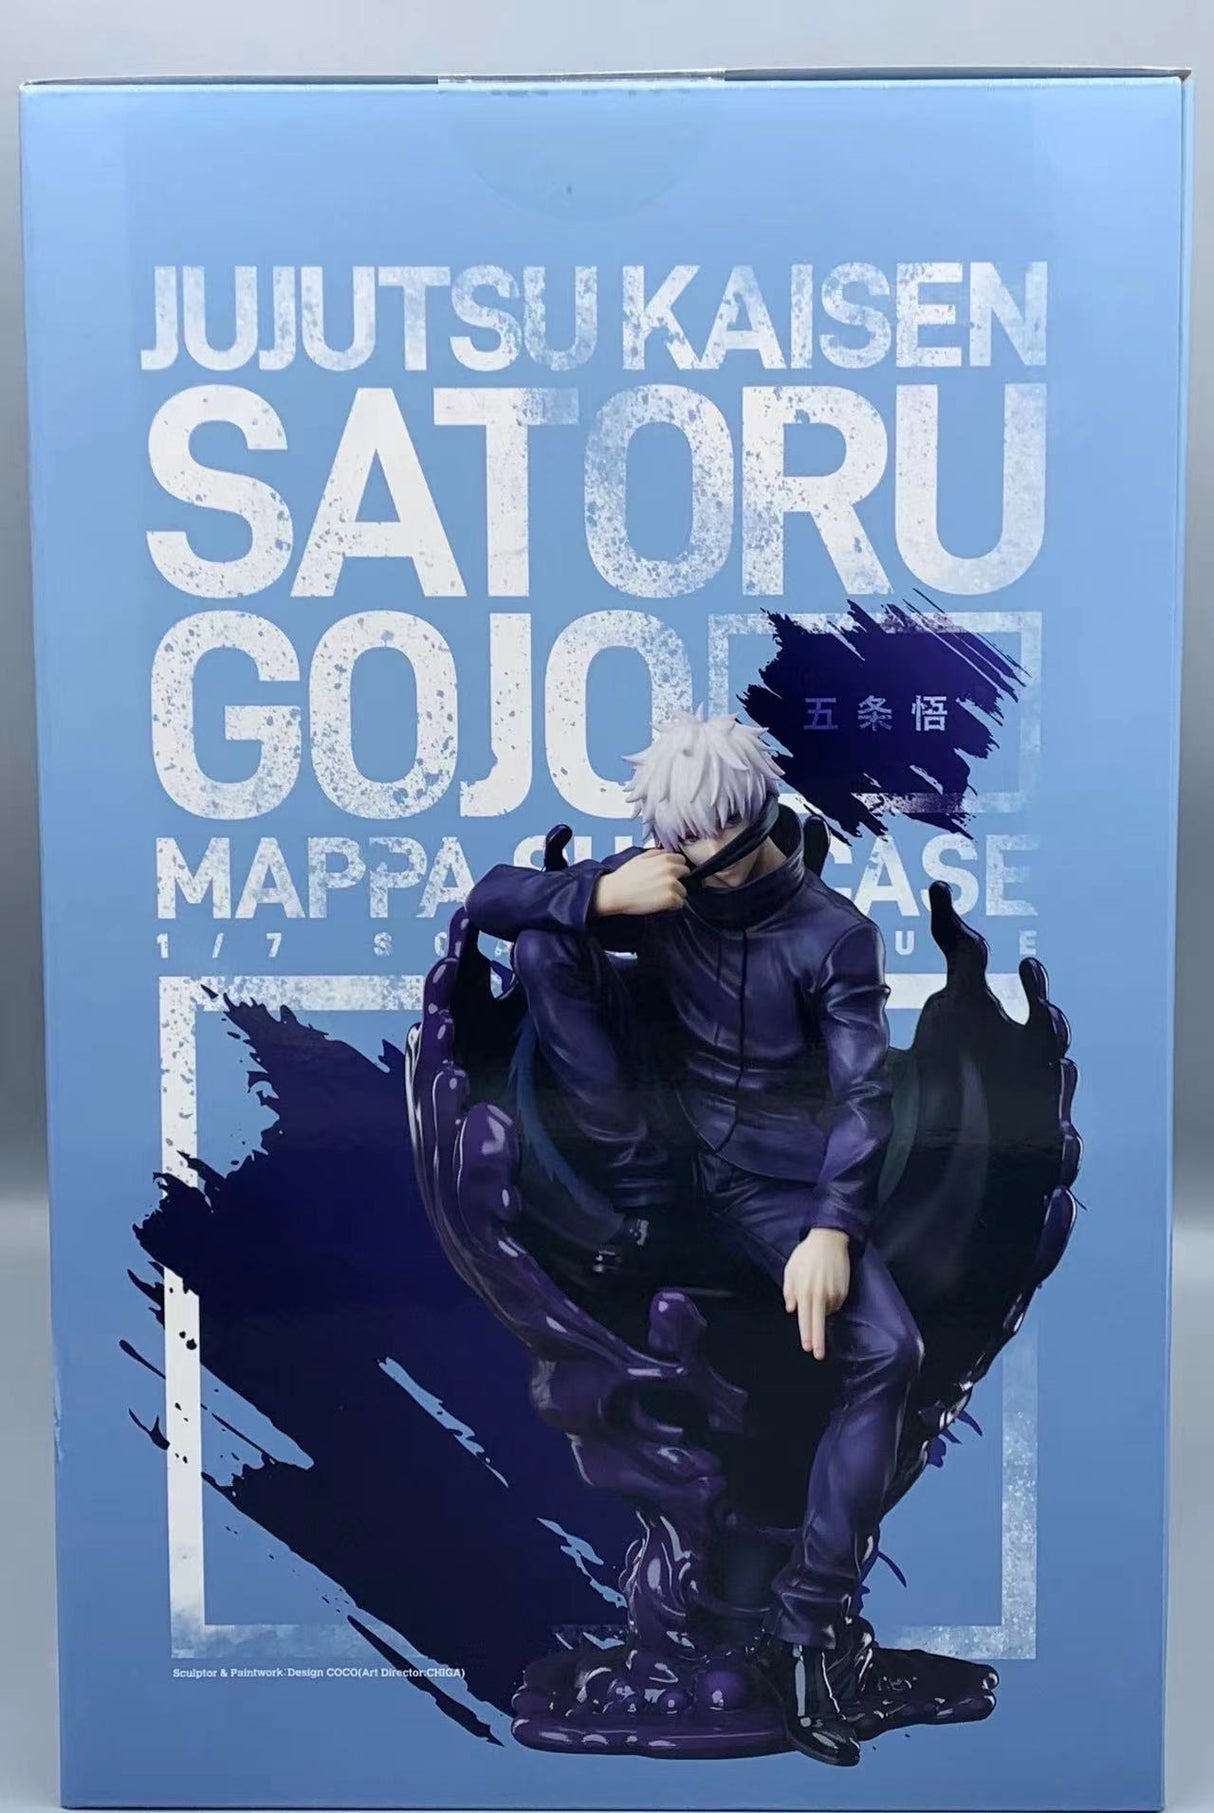 Jujutsu Kaisen - Satoru Gojo MAPPA SHOWCASE 1/7 (MAPPA)